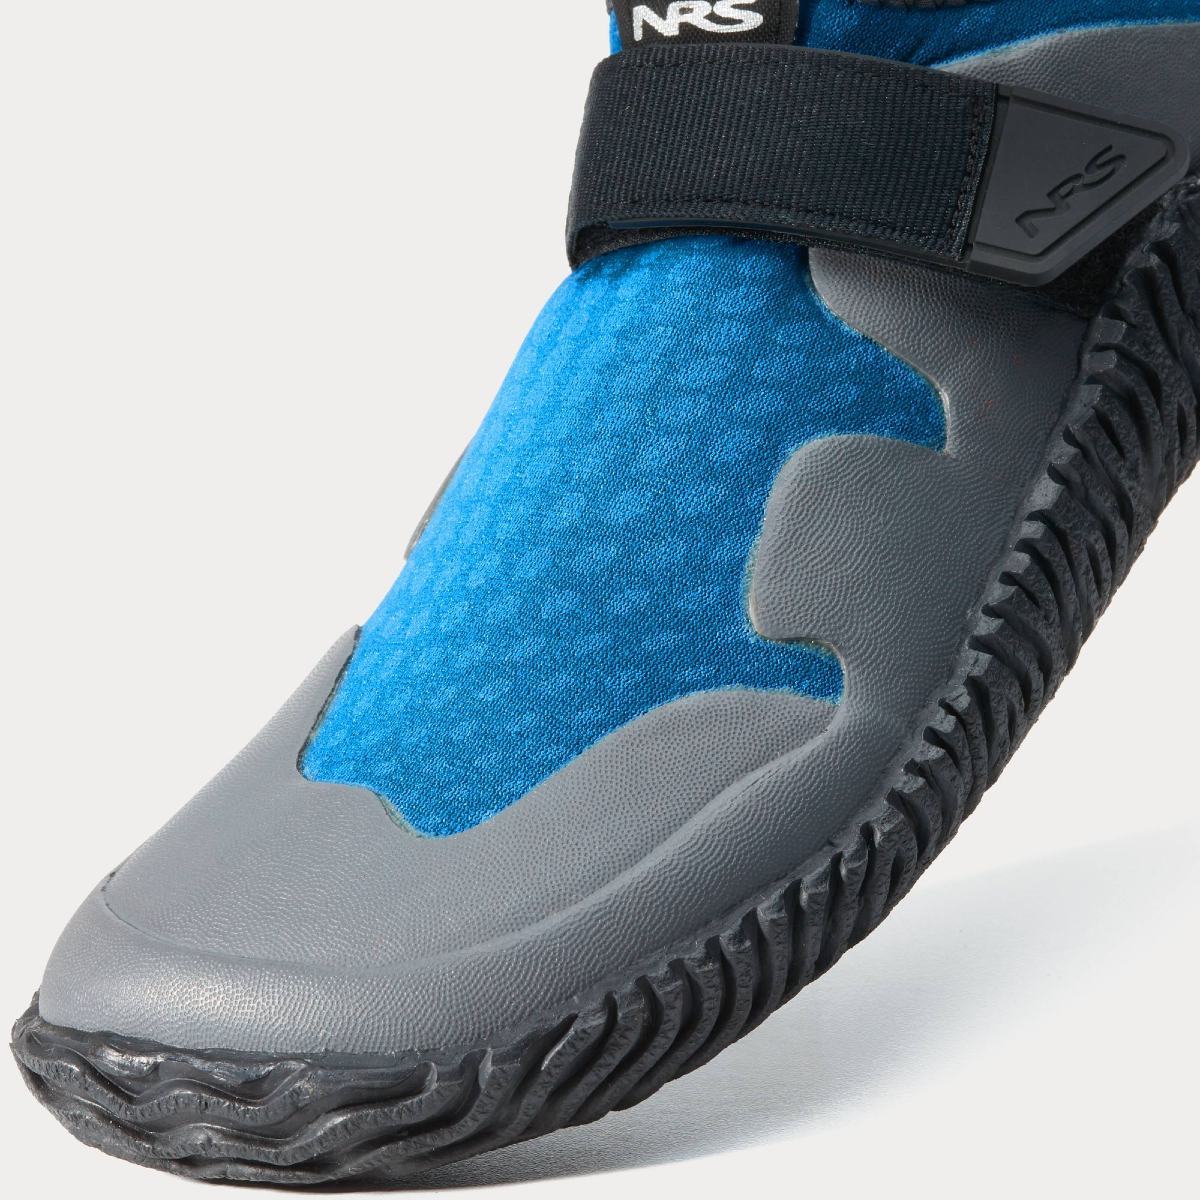 NRS Kicker Neoprene Shoes, Women's